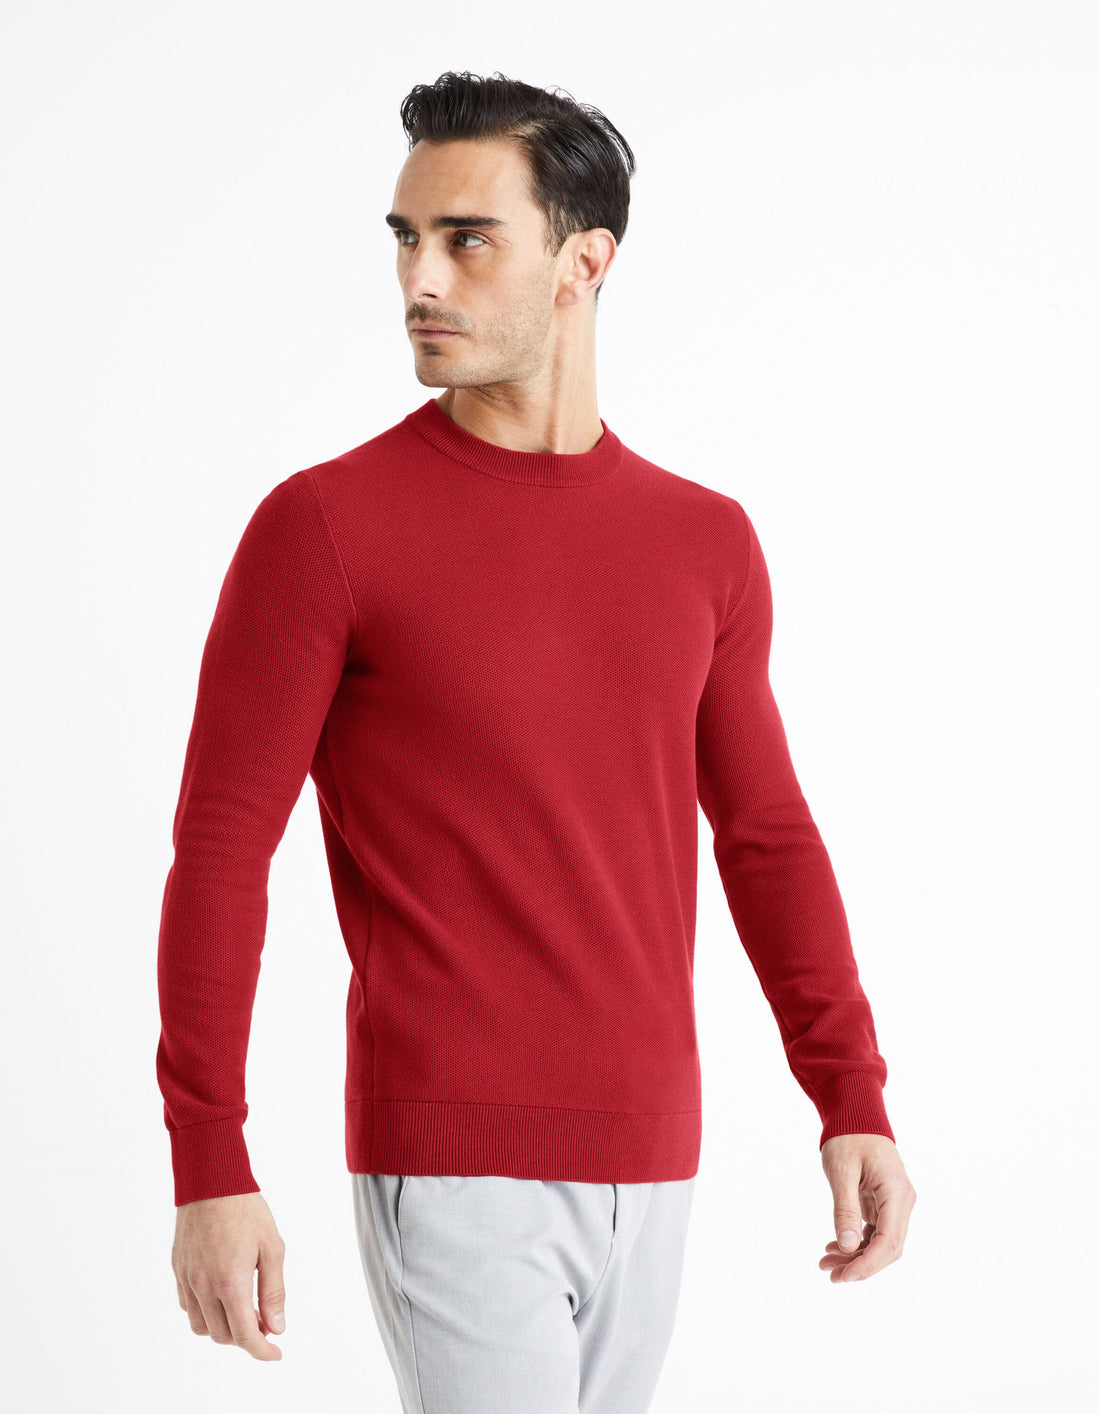 100% Cotton Round Neck Sweater - Burgundy_BEPIC_BURGUNDY_01